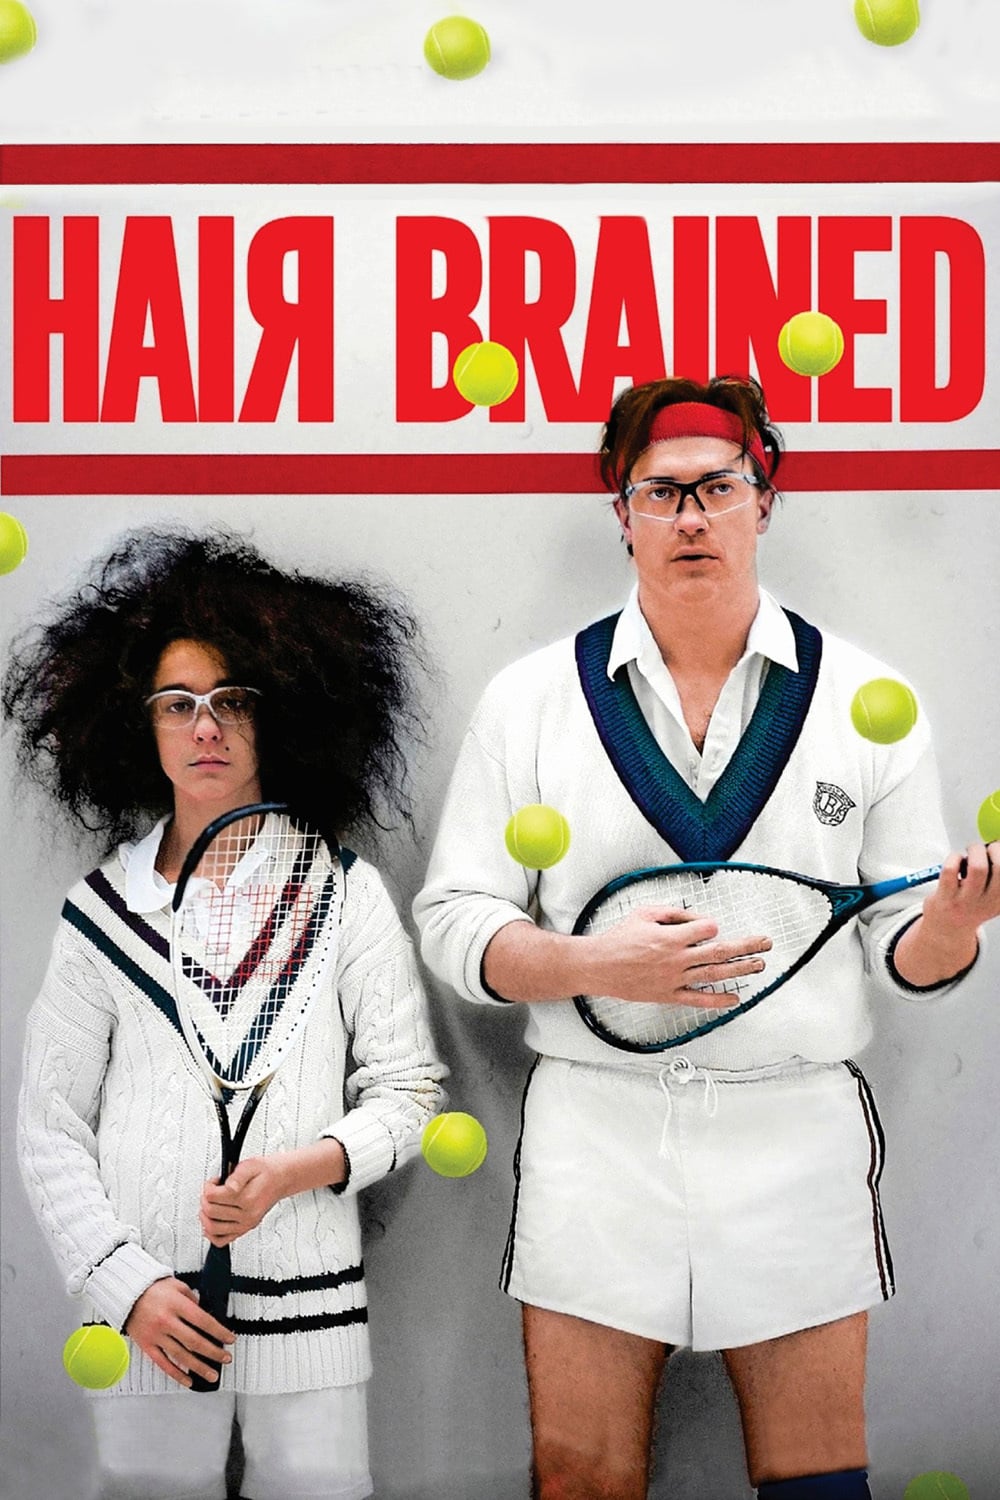 Plakat von "Hairbrained"